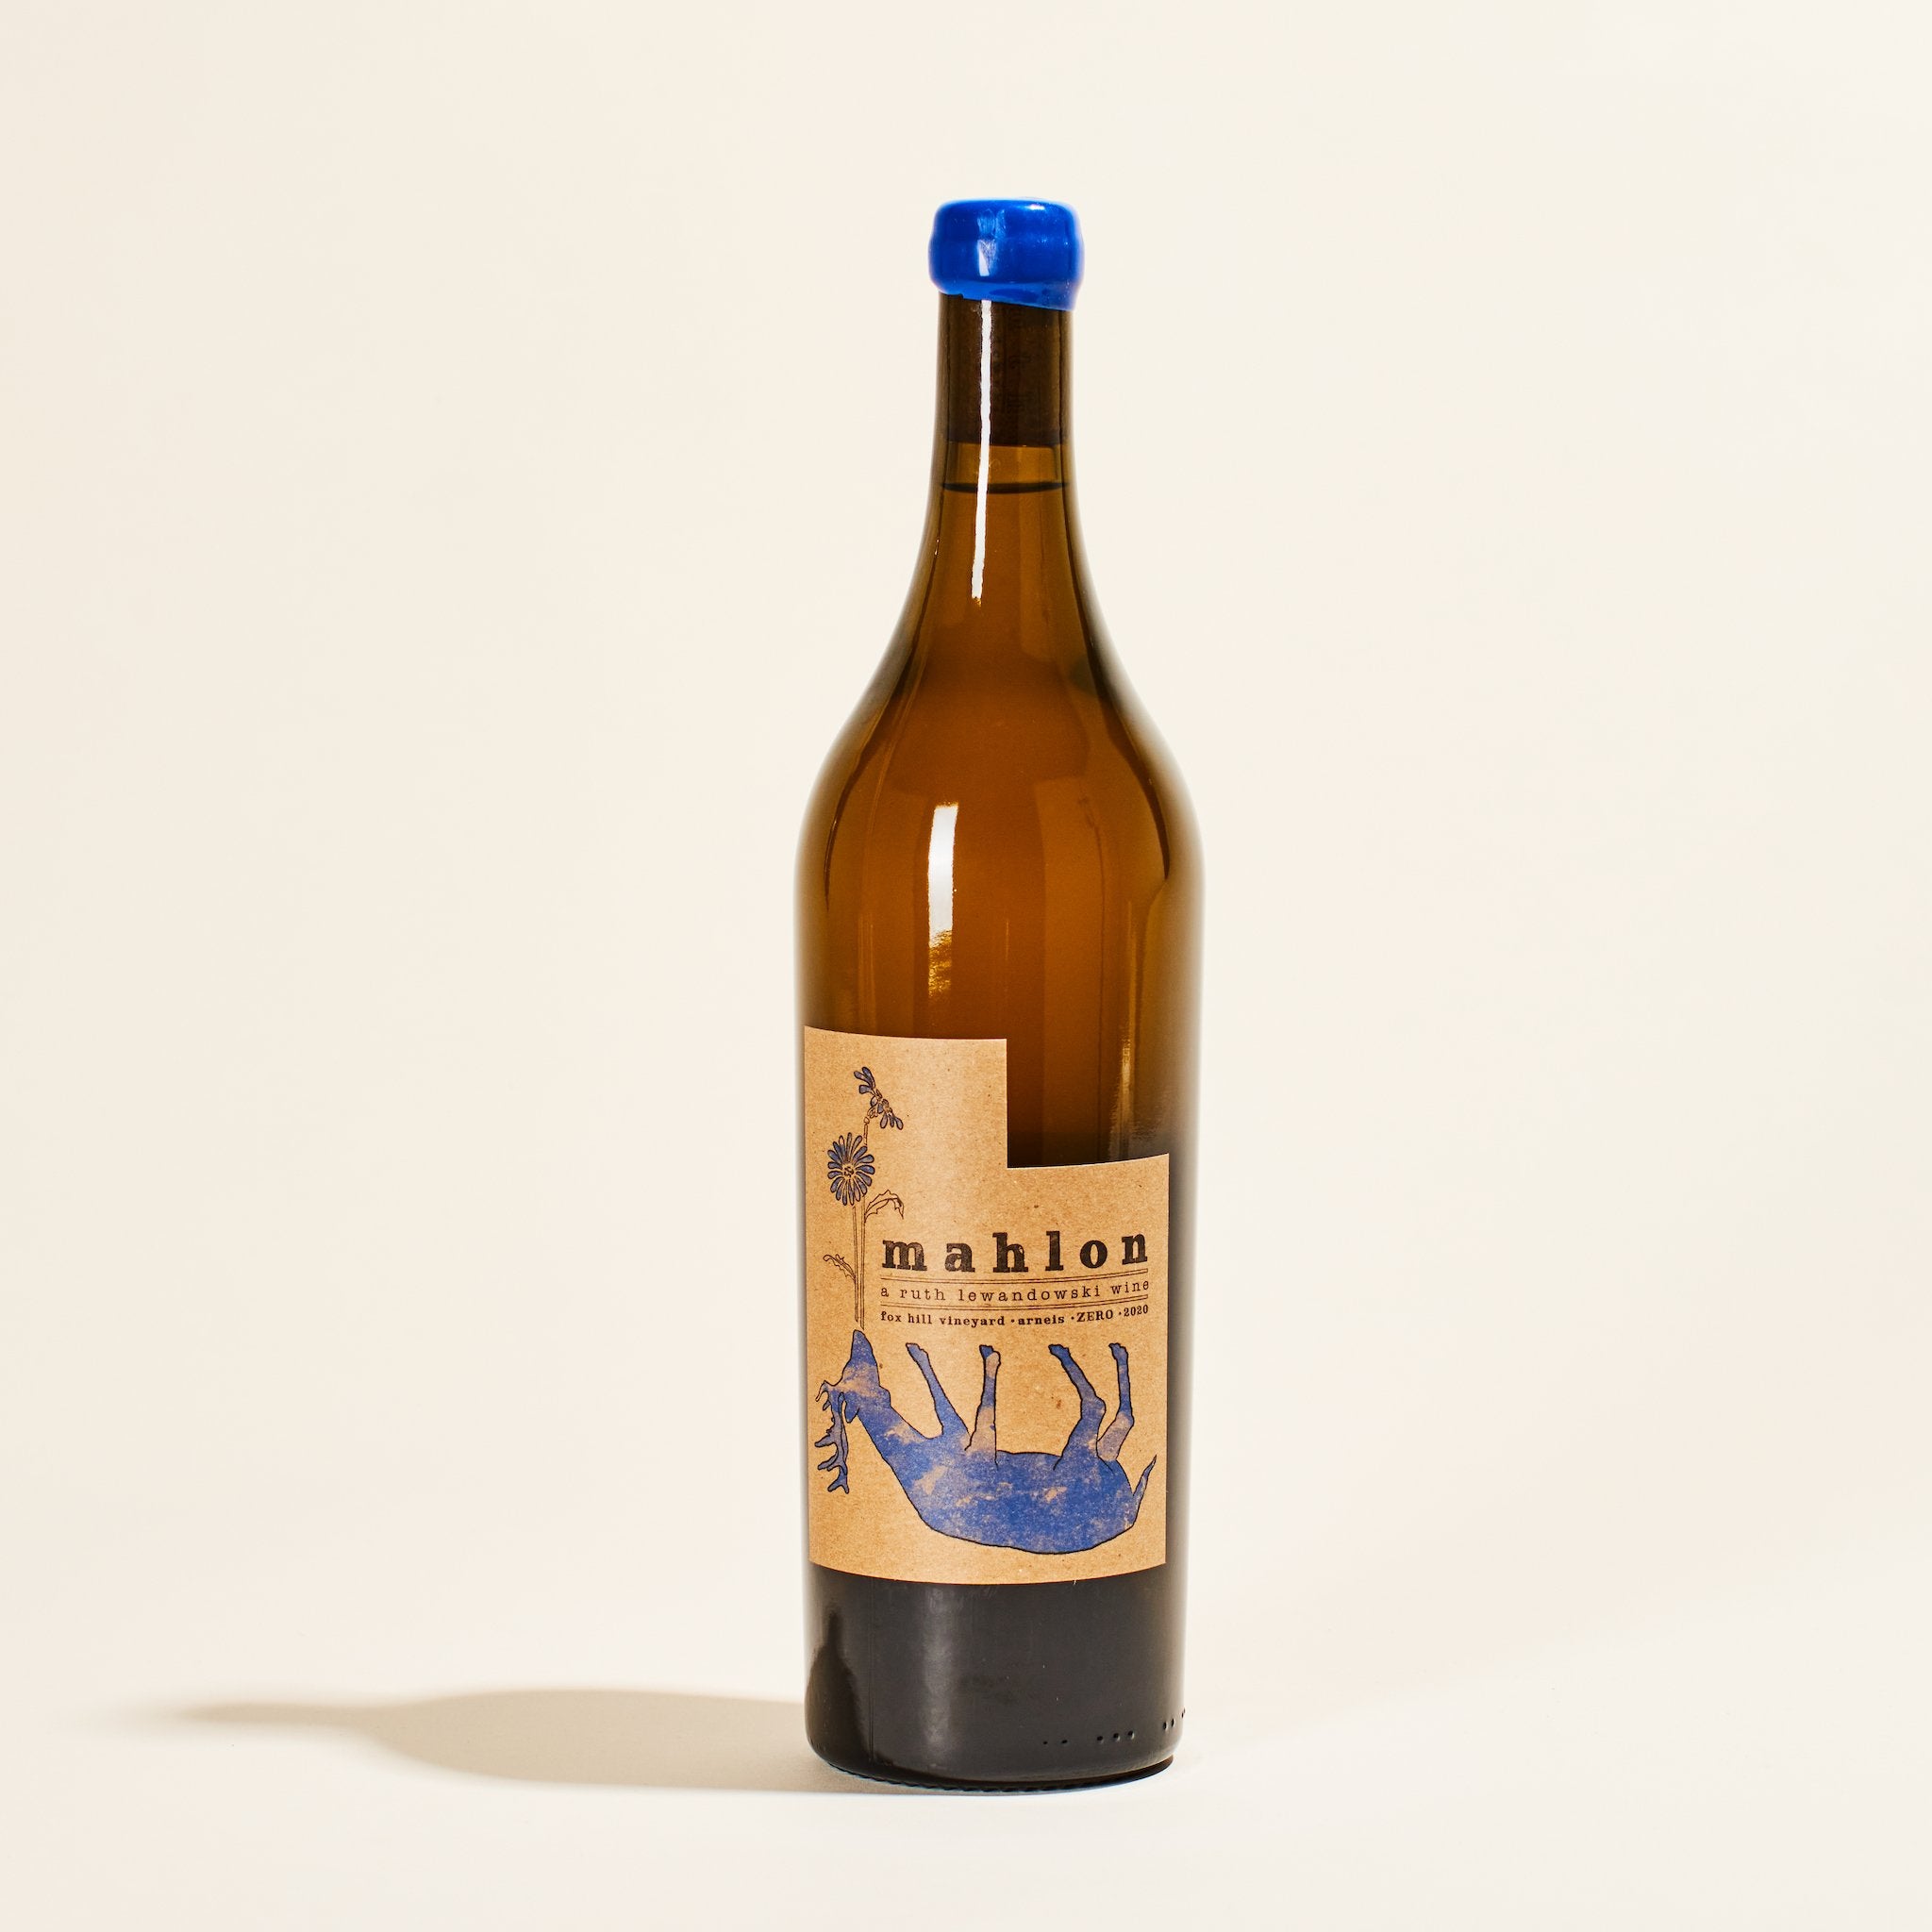 mahlon ruth lewandowski california usa natural white wine bottle